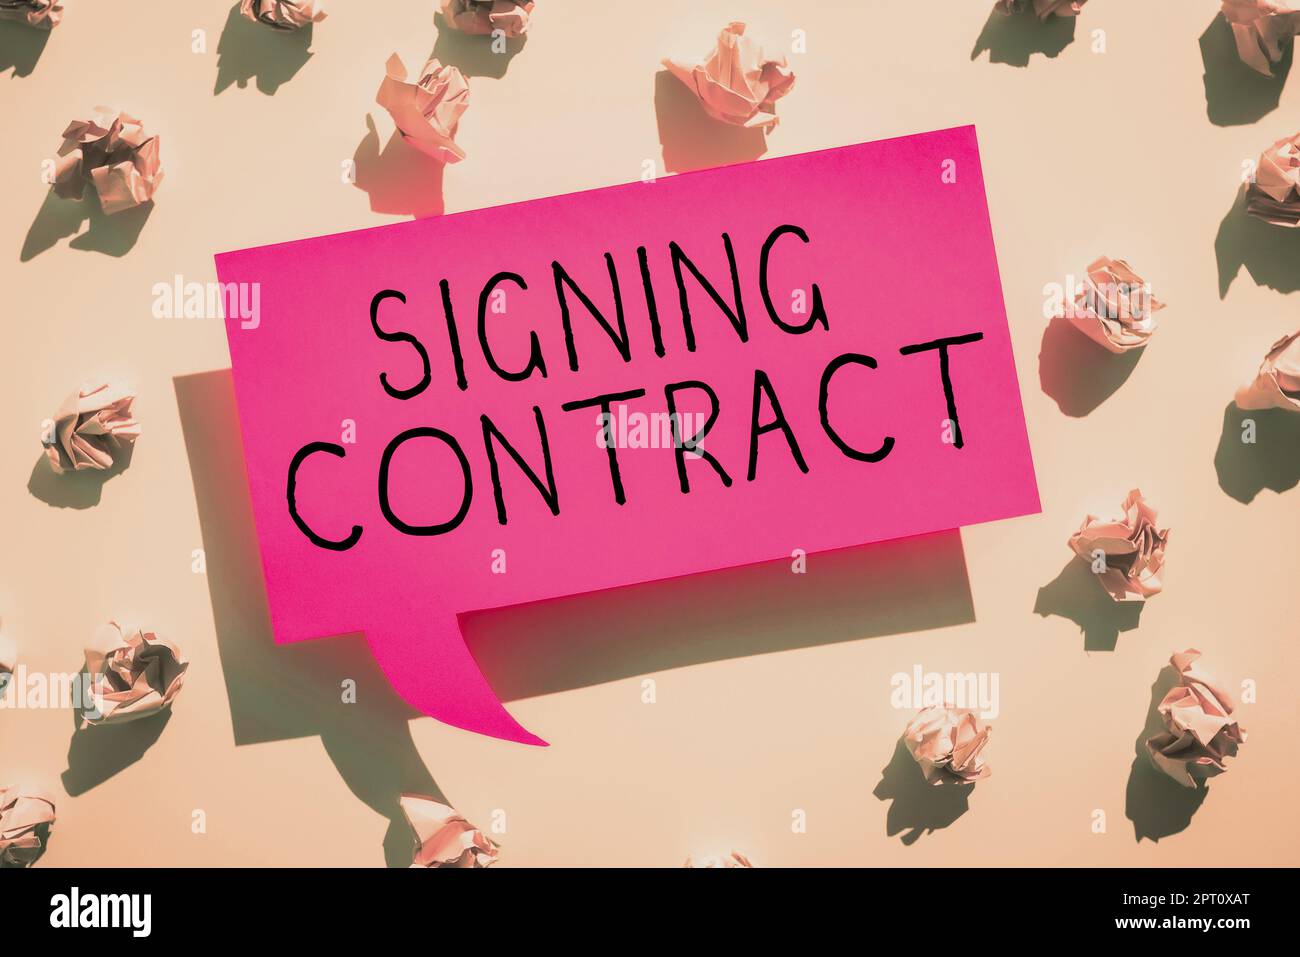 Texte manuscrite Signature du contrat, concept signifiant que les parties signataires du document acceptent les termes Banque D'Images